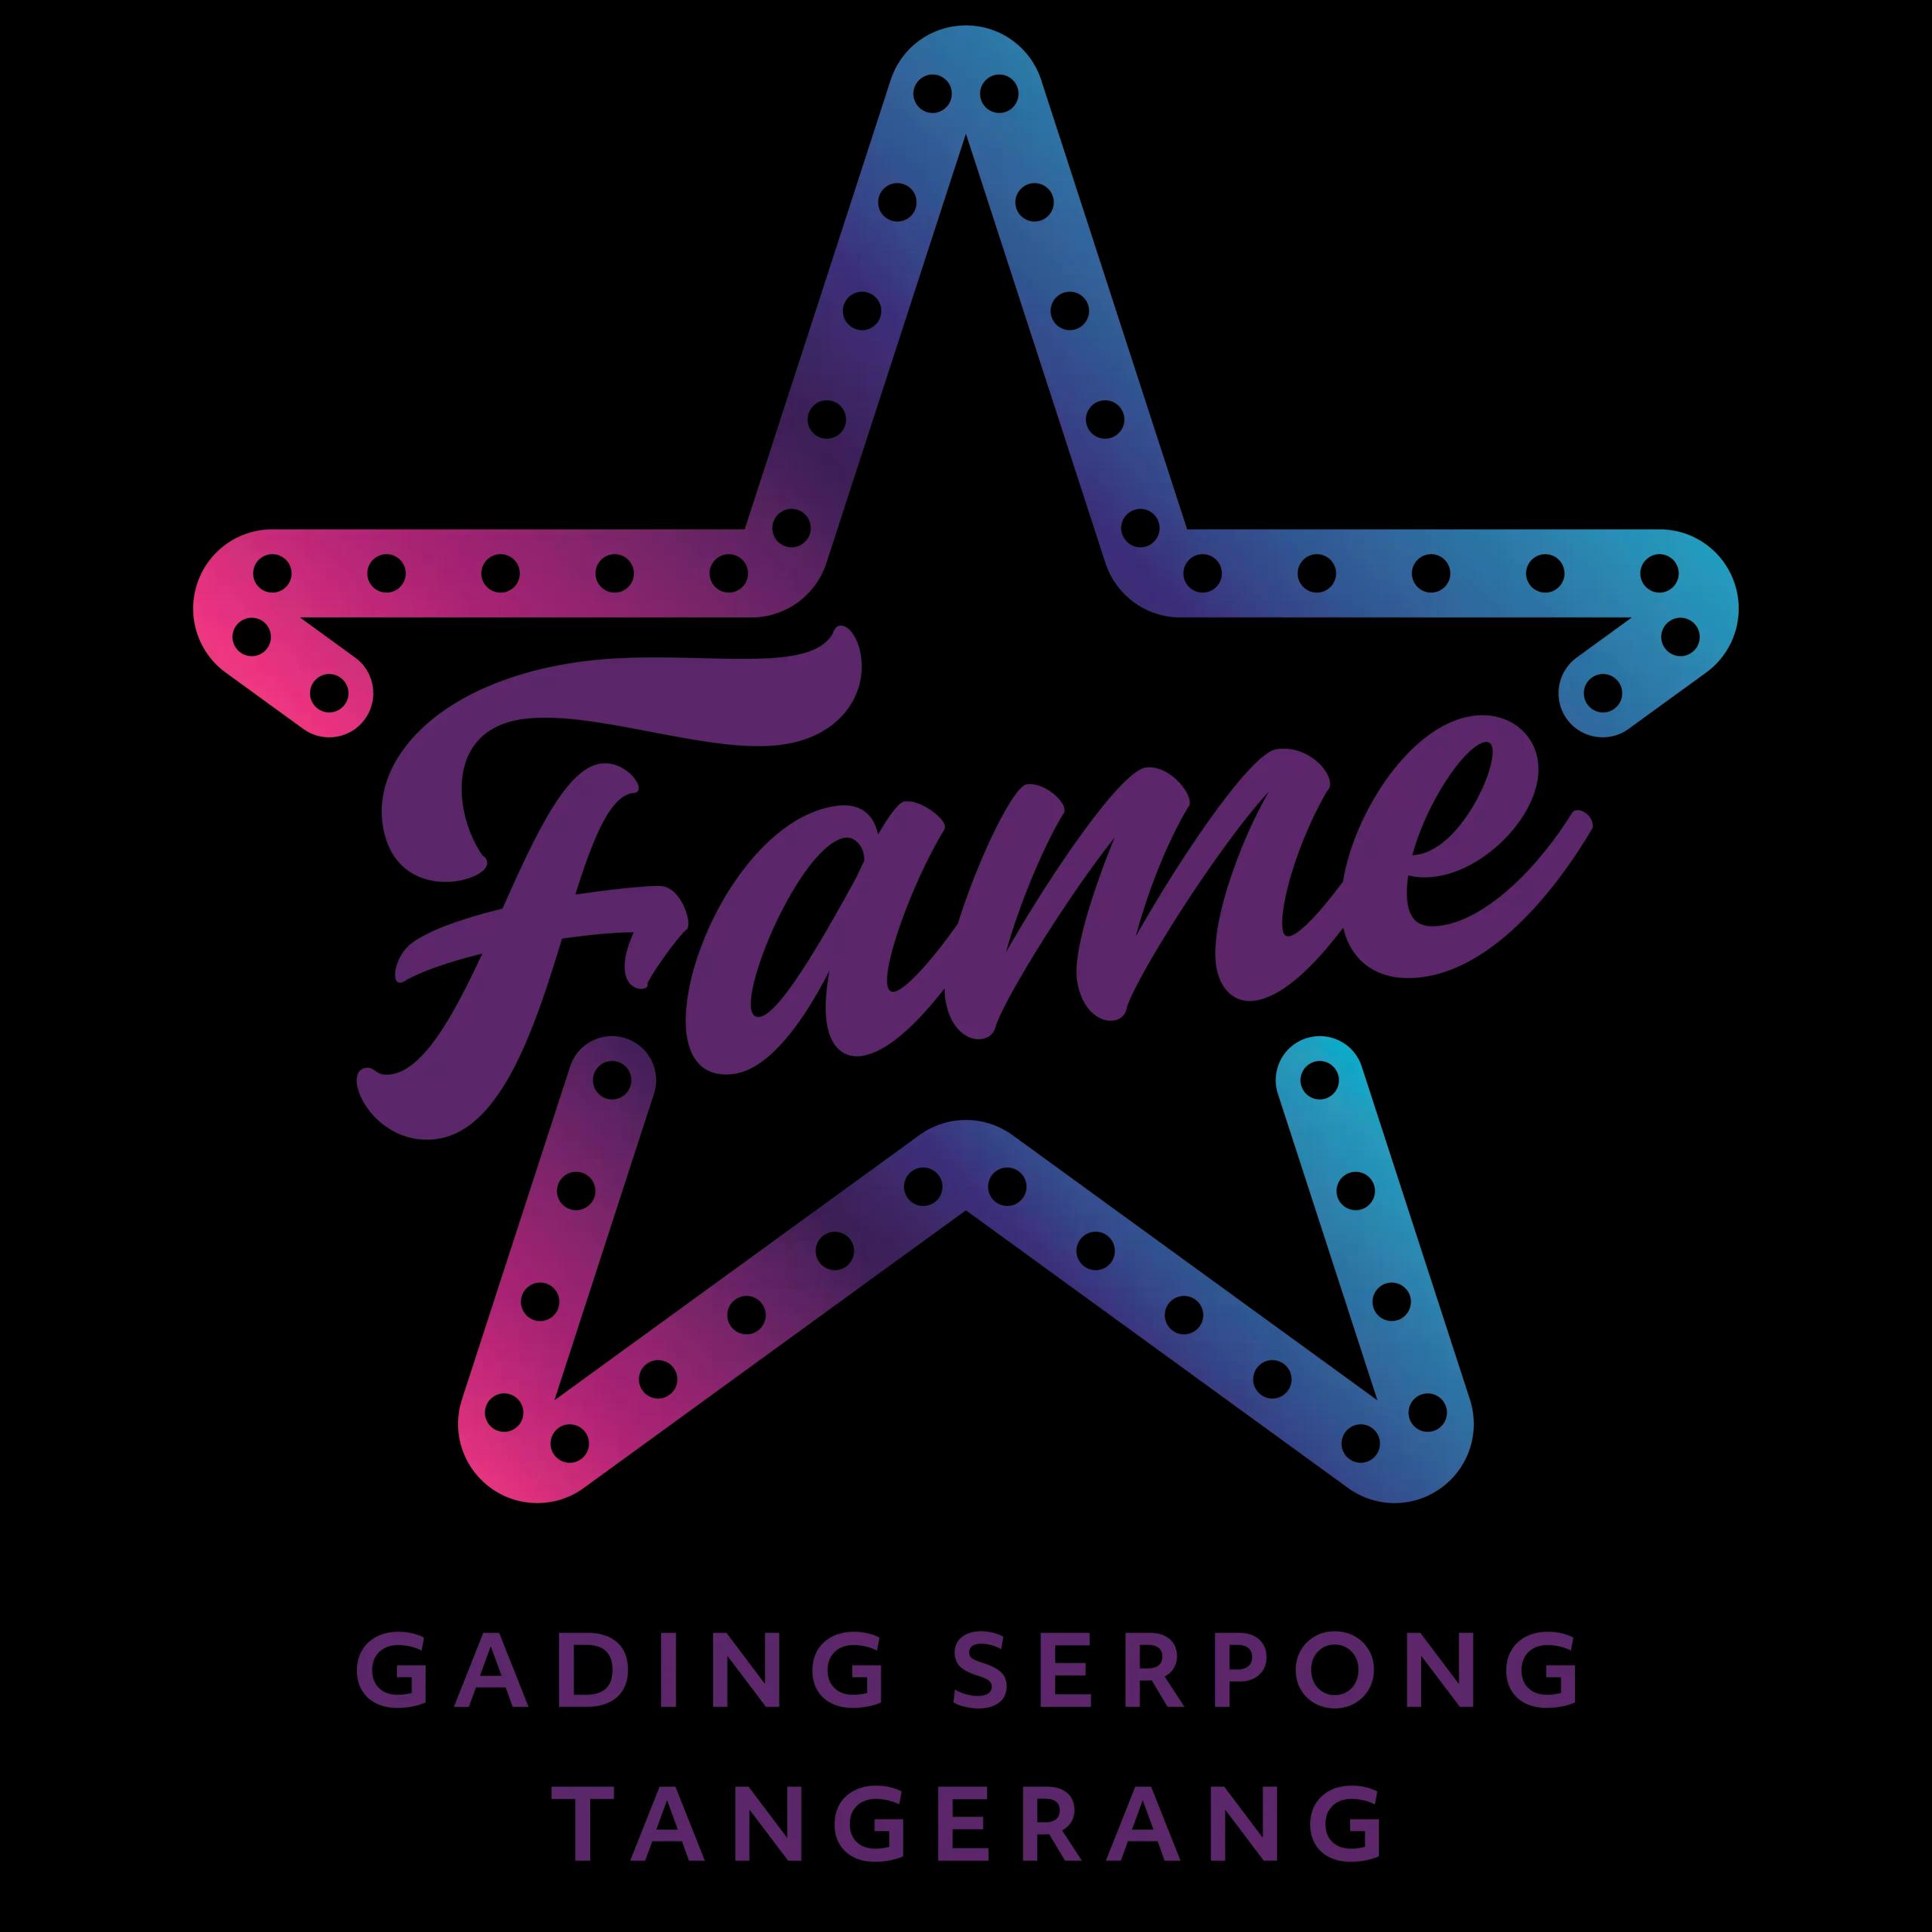 Fame Hotel Gading Serpong logo